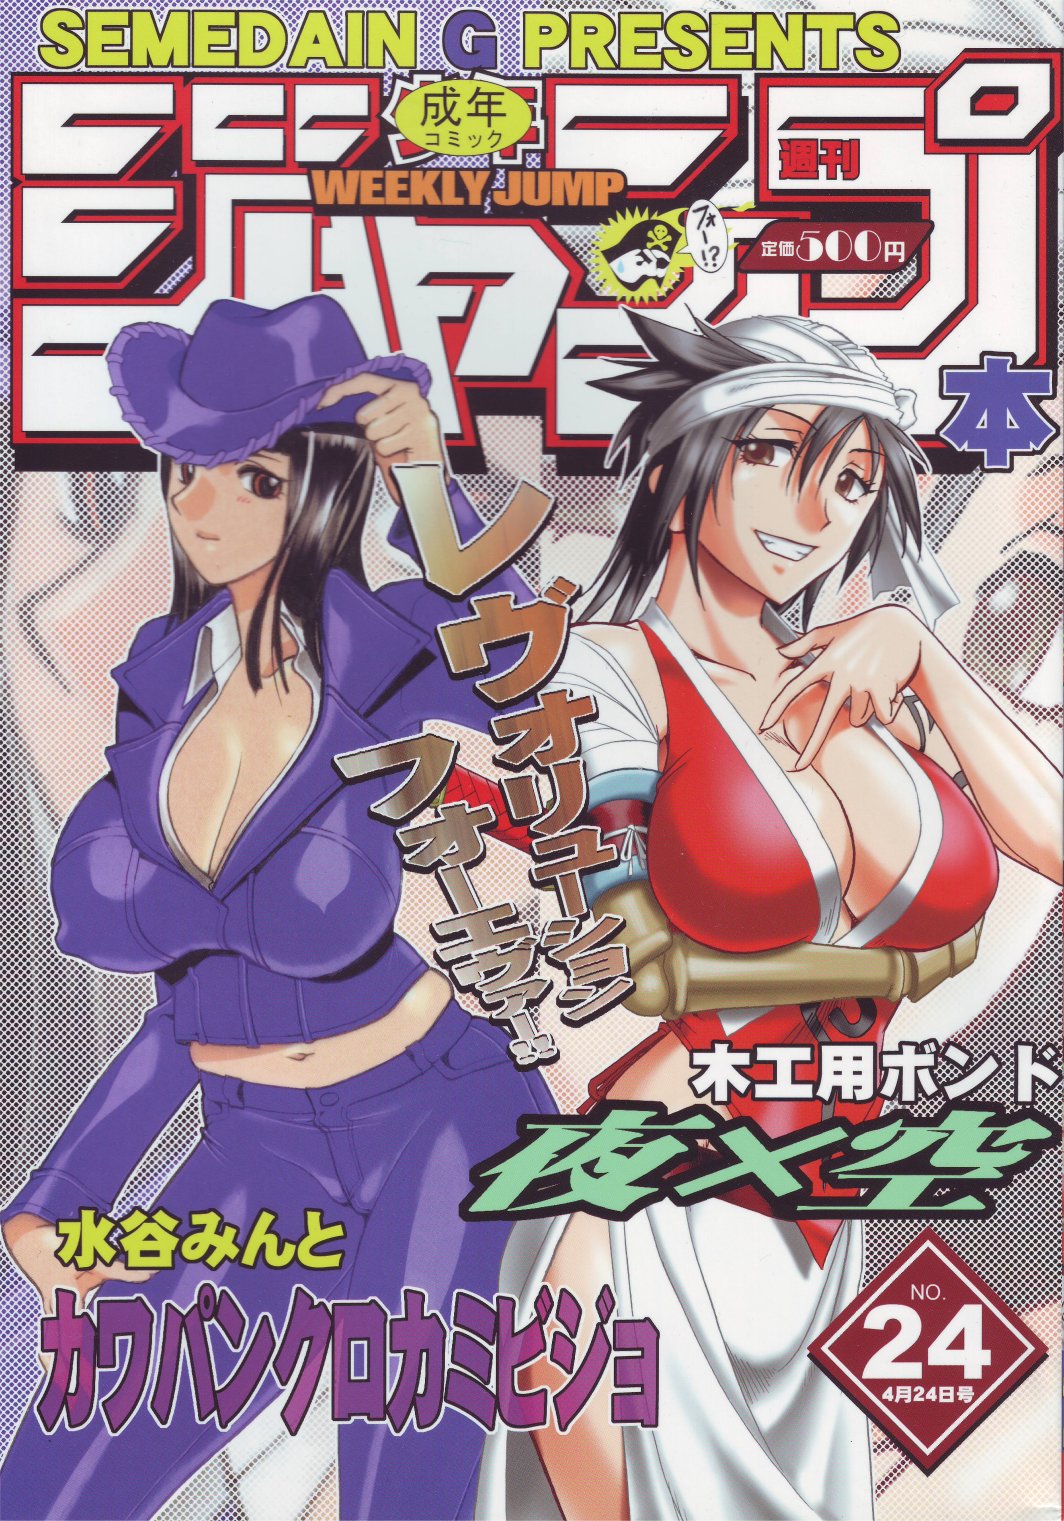 [SEMEDAIN G (Mizutani Mint, Mokkouyou Bond)] SEMEDAIN G WORKS vol.24 - Shuukan Shounen Jump Hon 4 (Bleach, One Piece) page 1 full